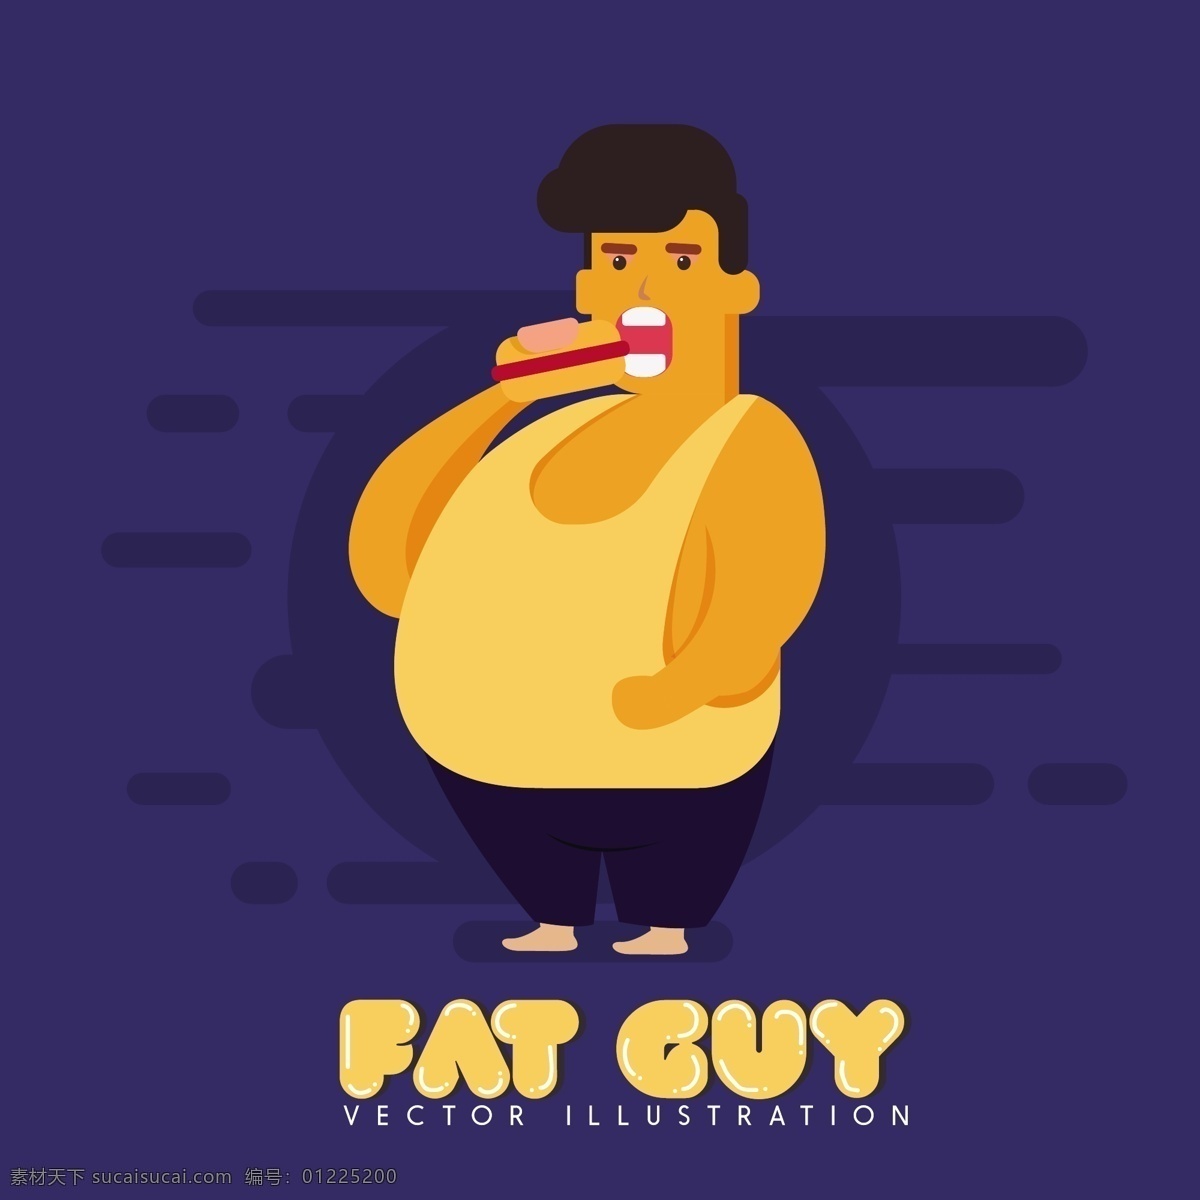 一个 胖子 吃 汉堡 男胖子 减肥 吃汉堡 减肥产品